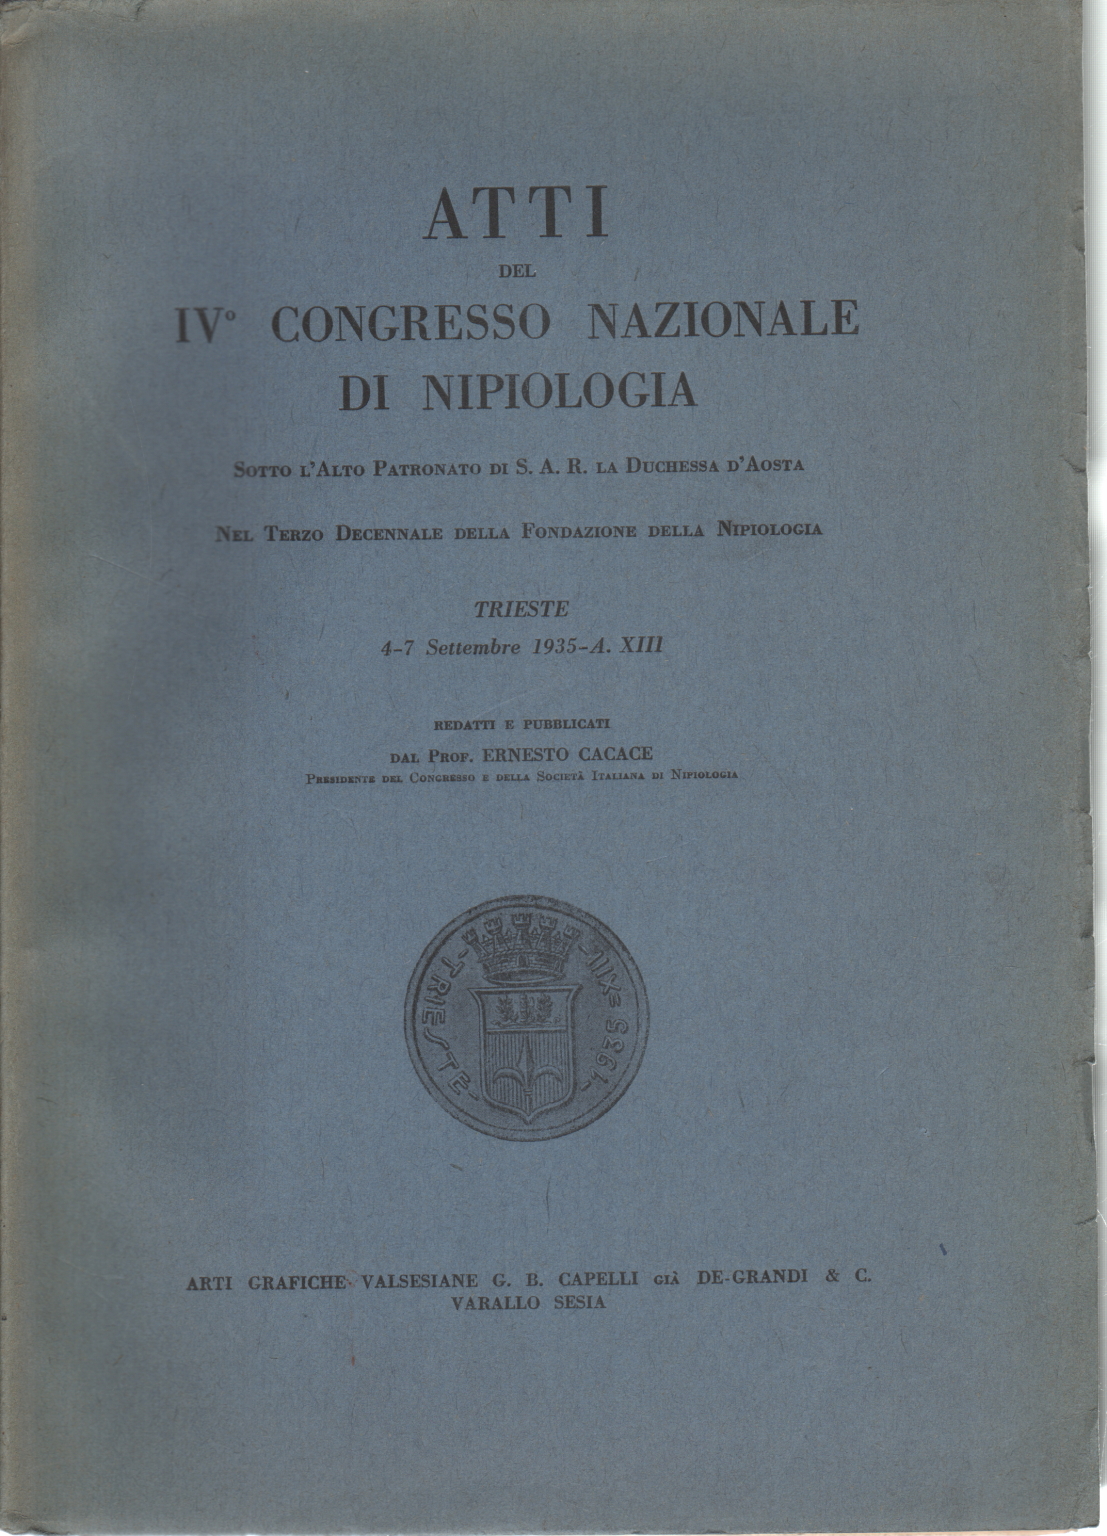 Actas de la IVº Congreso de la Nacional Nipiologia, Ernesto Cacace